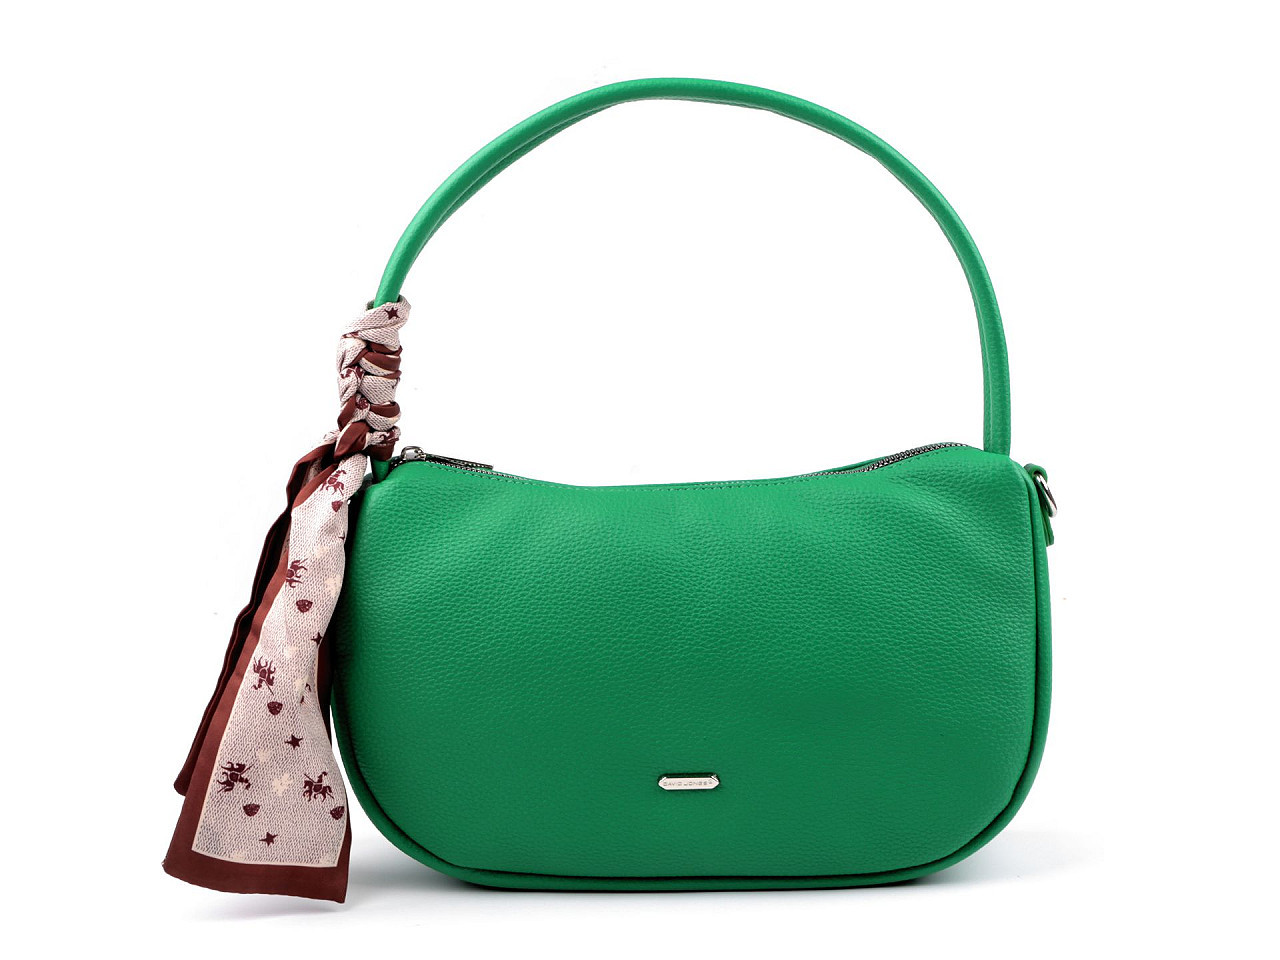 Dámská kabelka 32x19 cm, barva 11 zelená pastelová